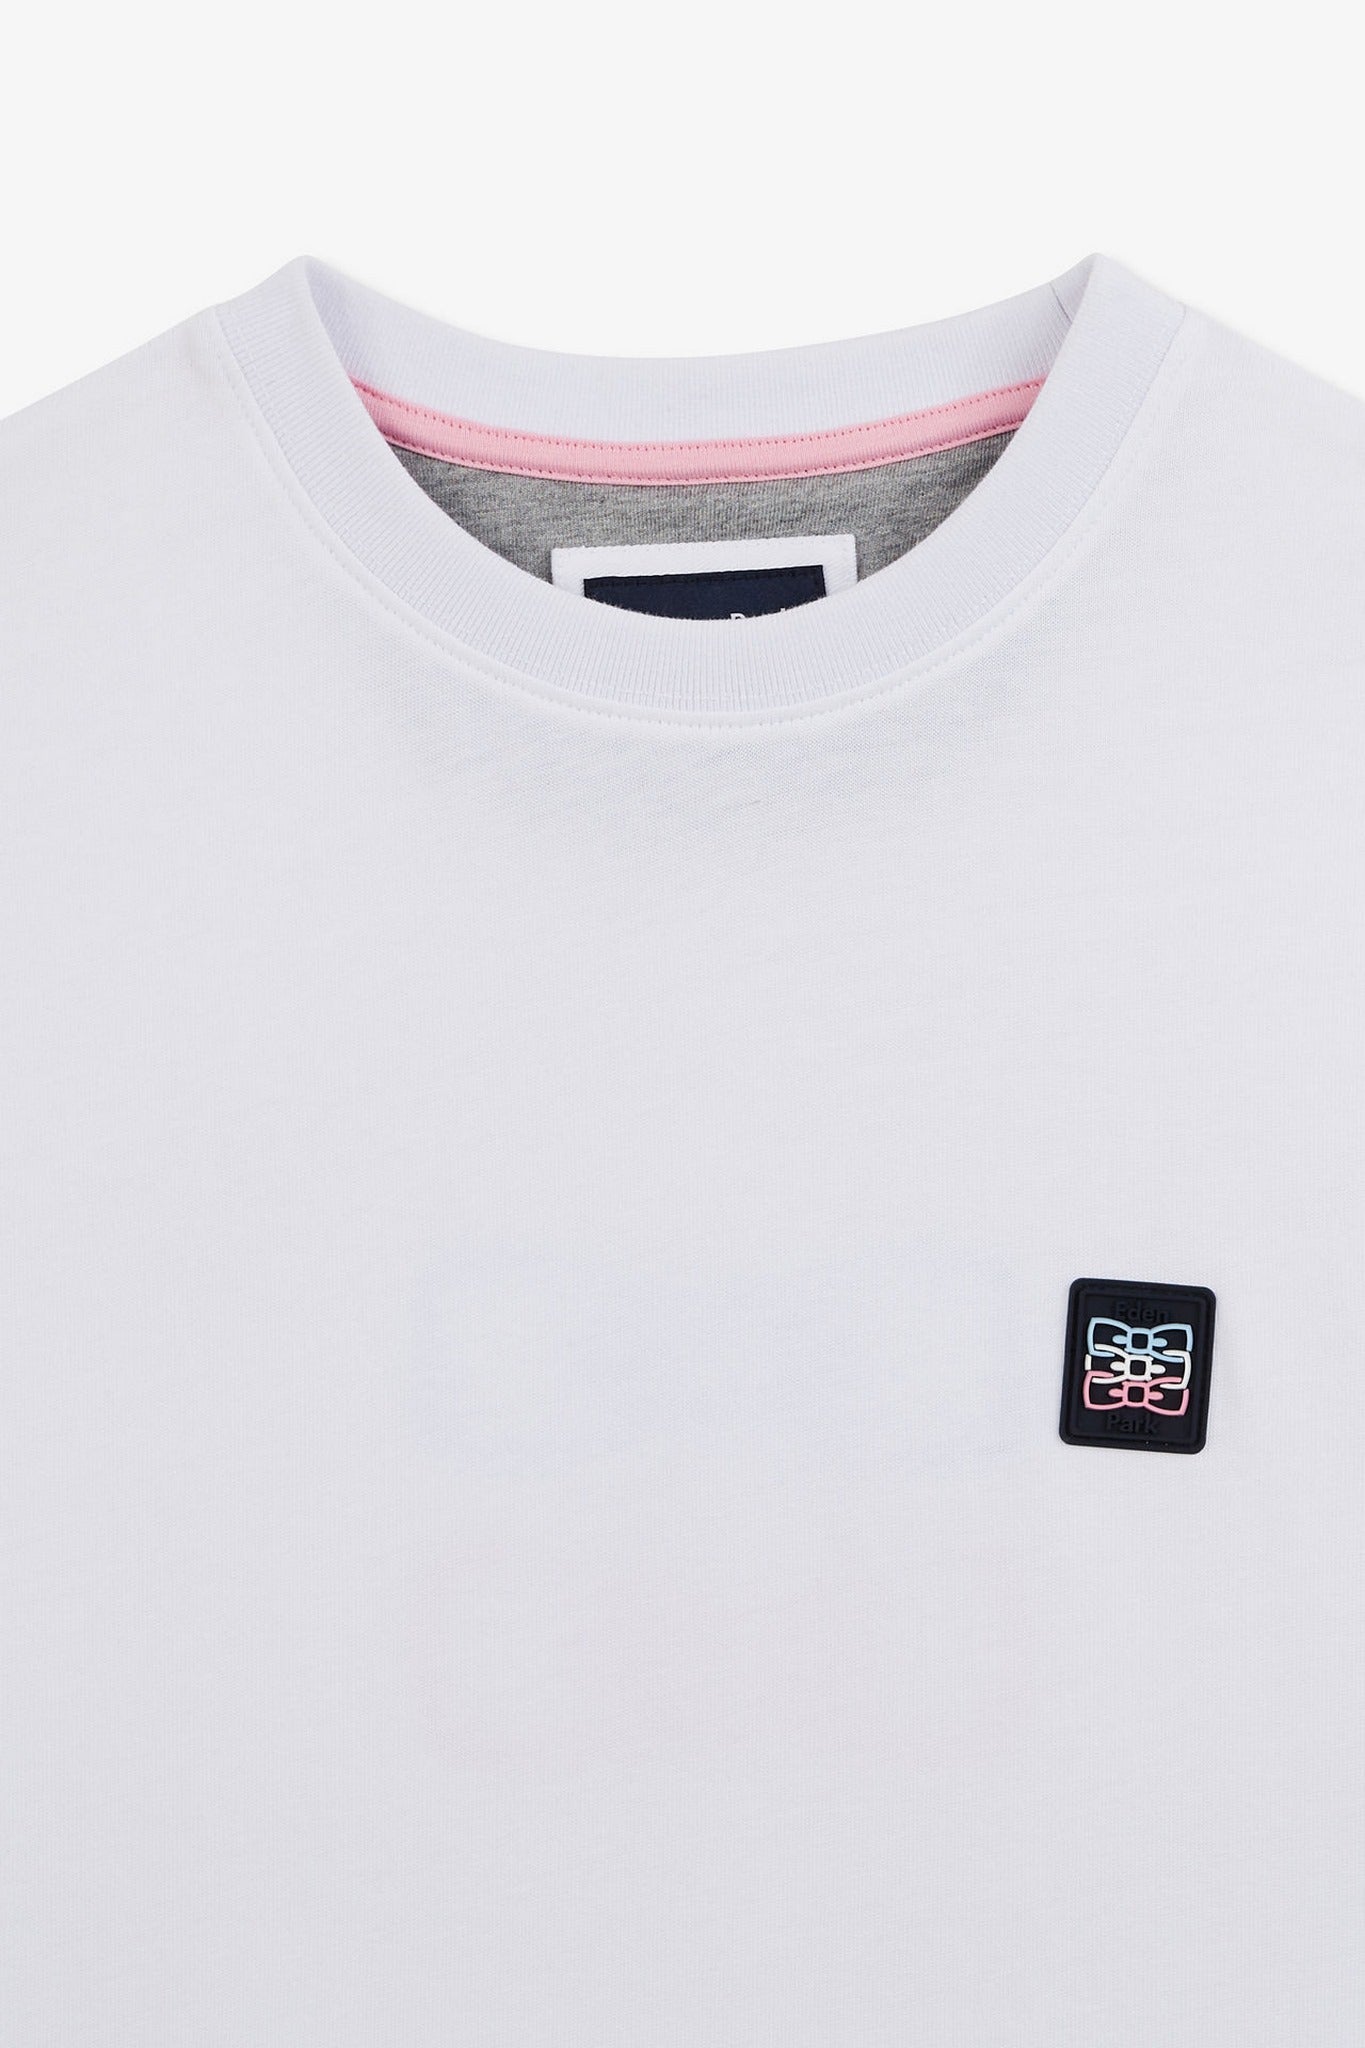 T-shirt manches courtes blanc avec logo reliefé - Image 7